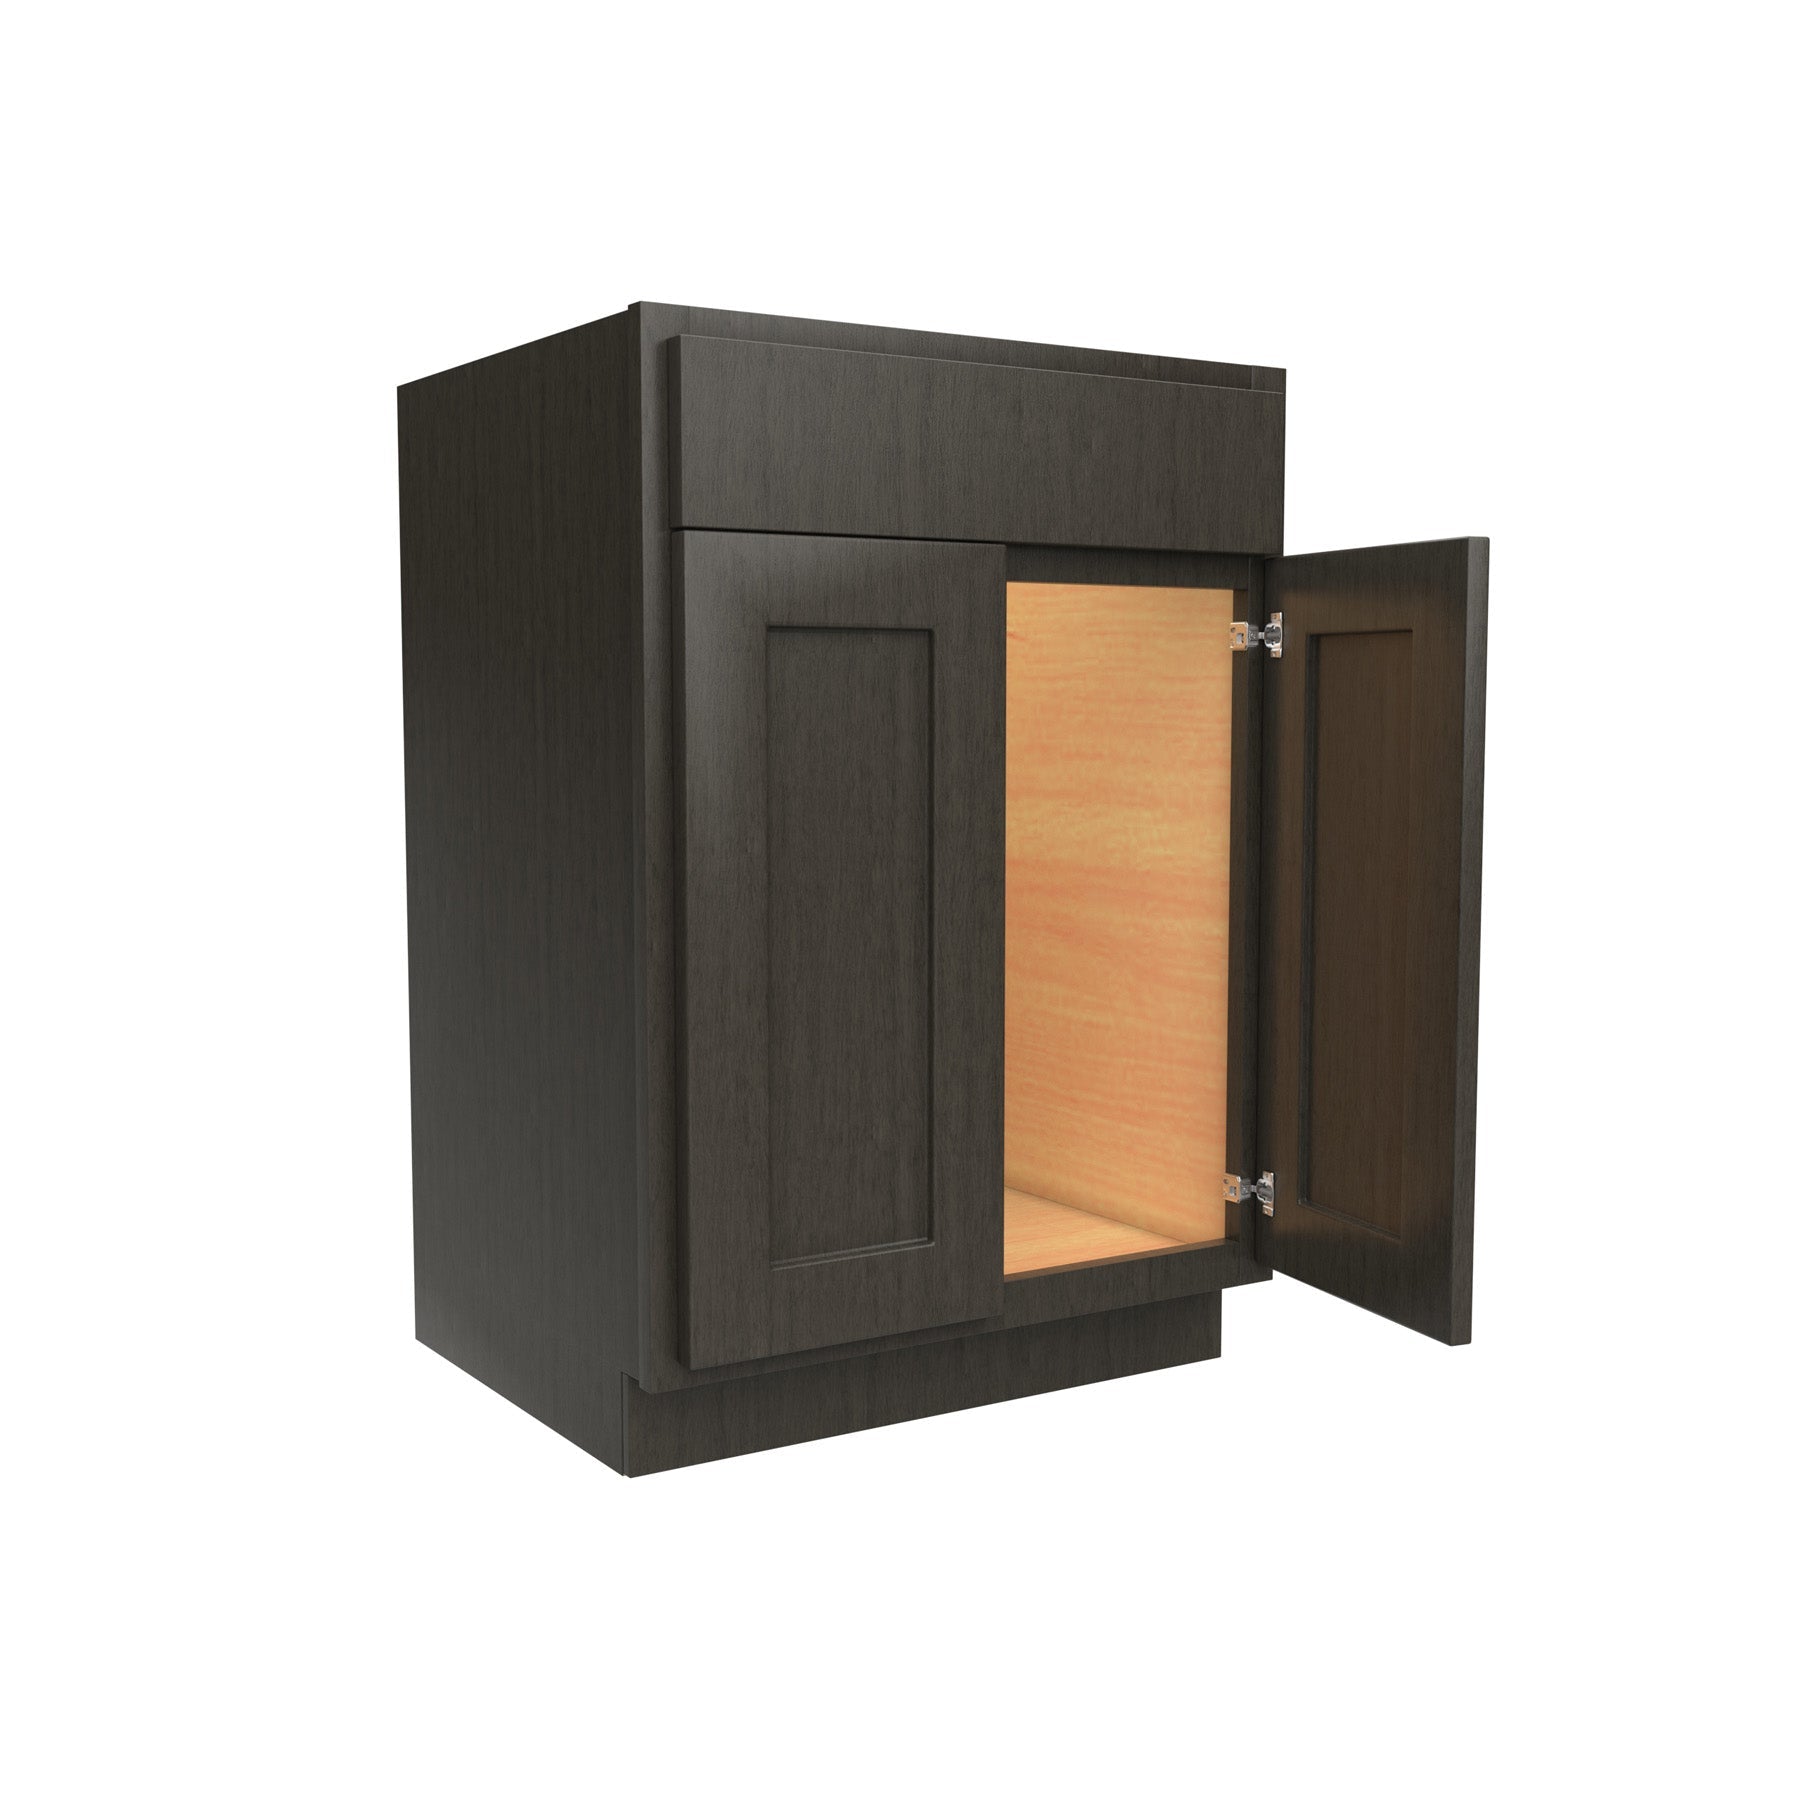 RTA Luxor Smoky Grey - Double Door Vanity Sink Base Cabinet | 24"W x 34.5"H x 21"D